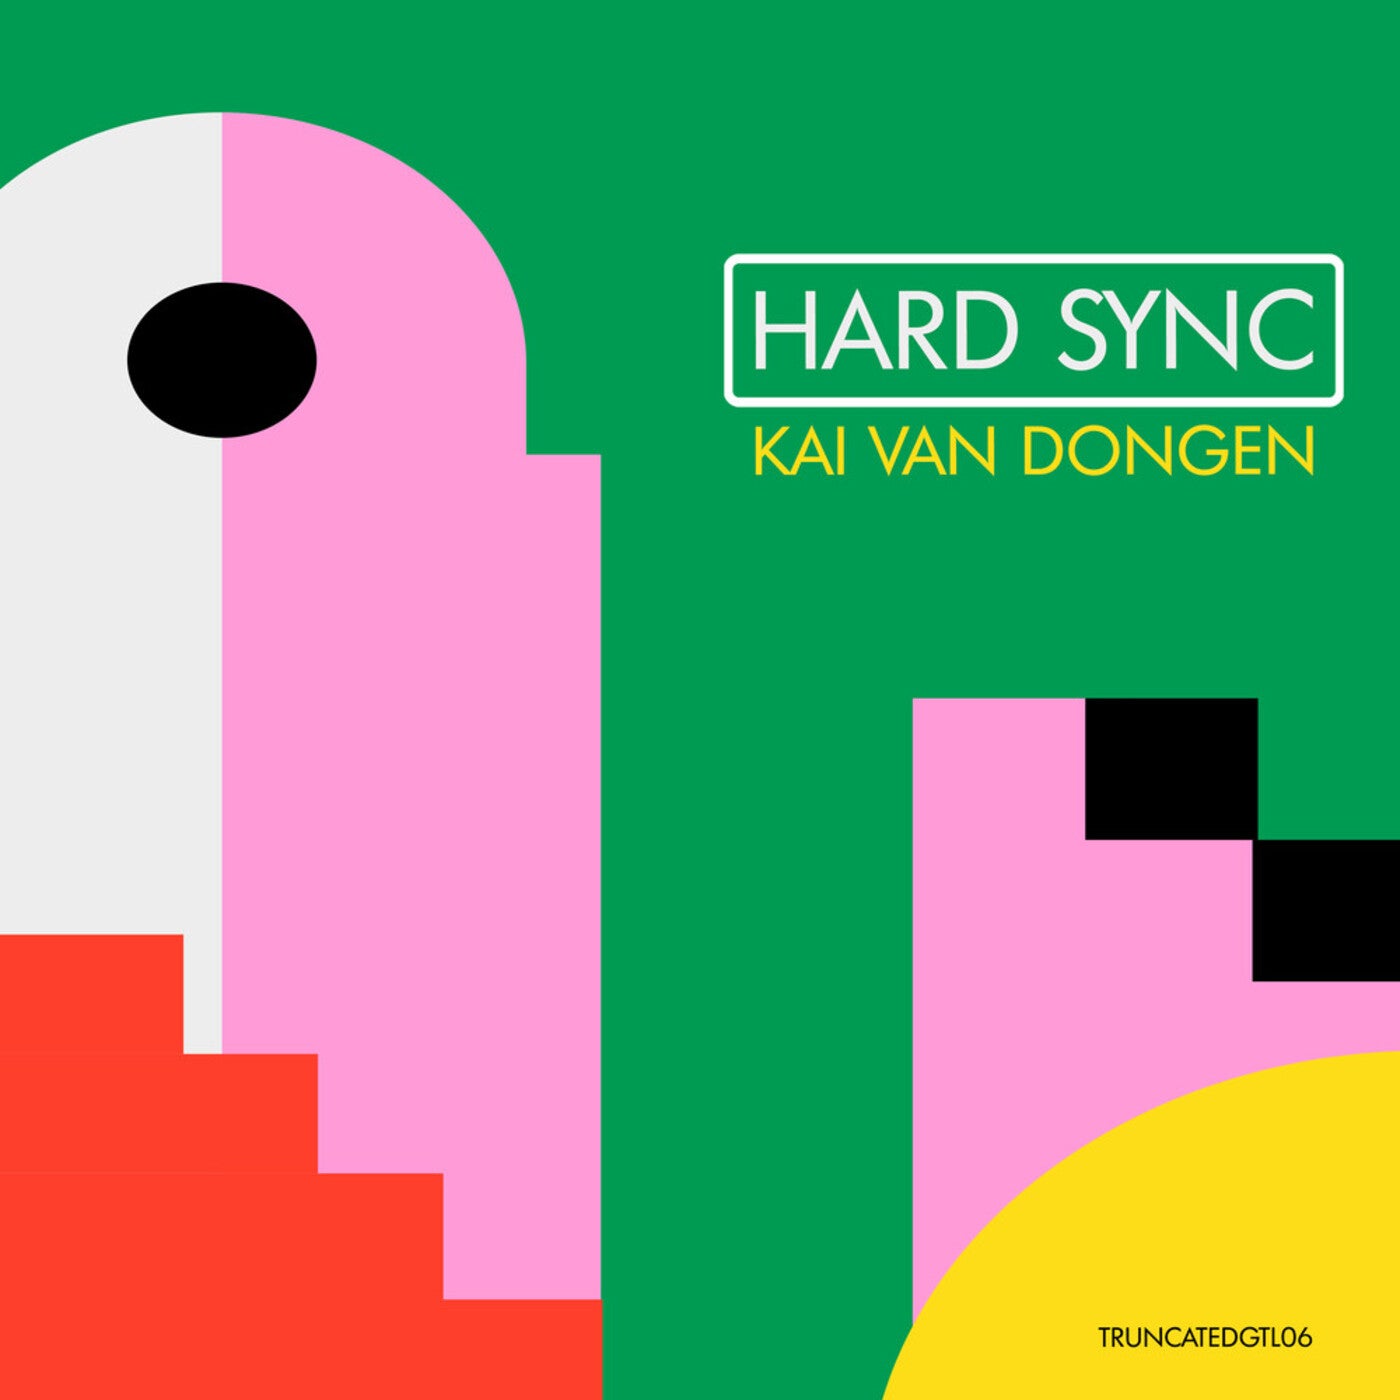 Kai van Dongen – Hard Sync [TRUNCATEDGTL06]